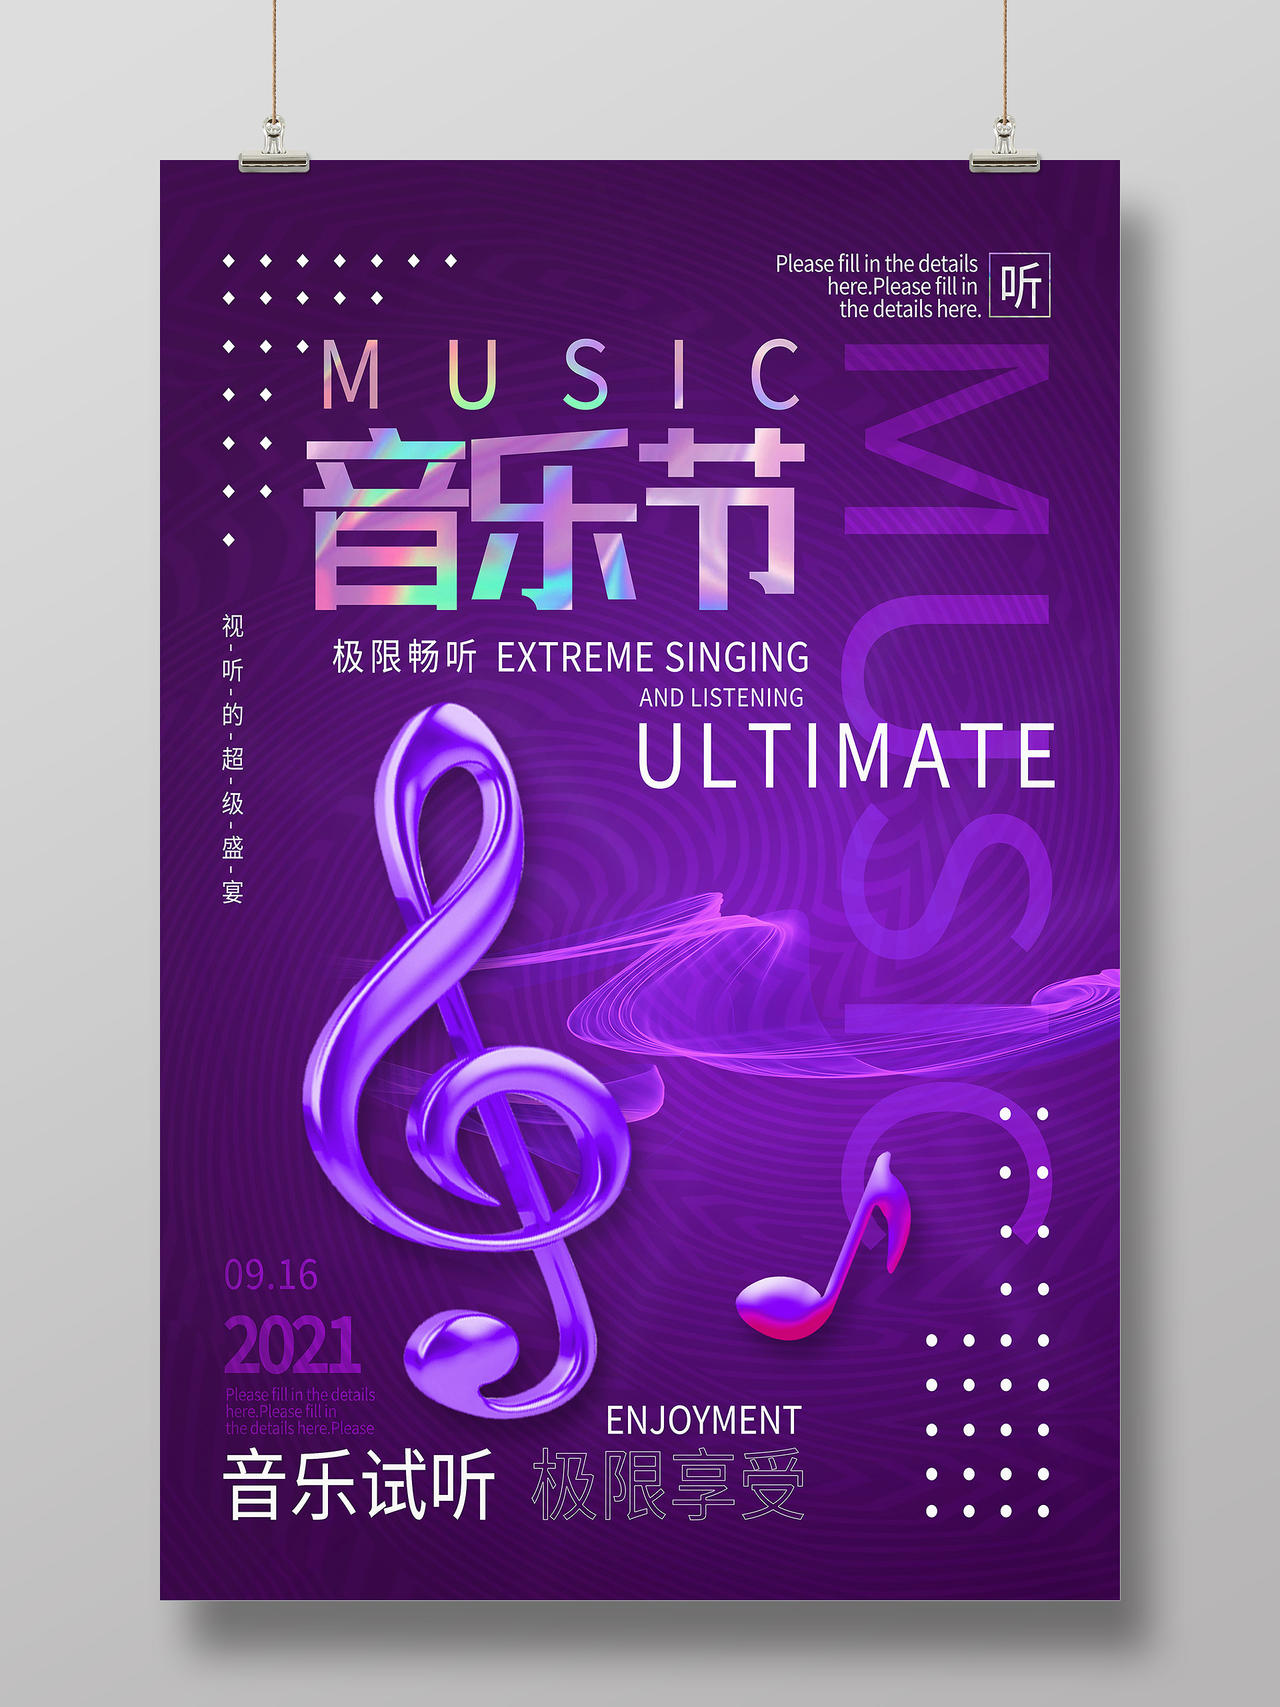 紫色简约音乐节音乐试听极限享受酸性海报